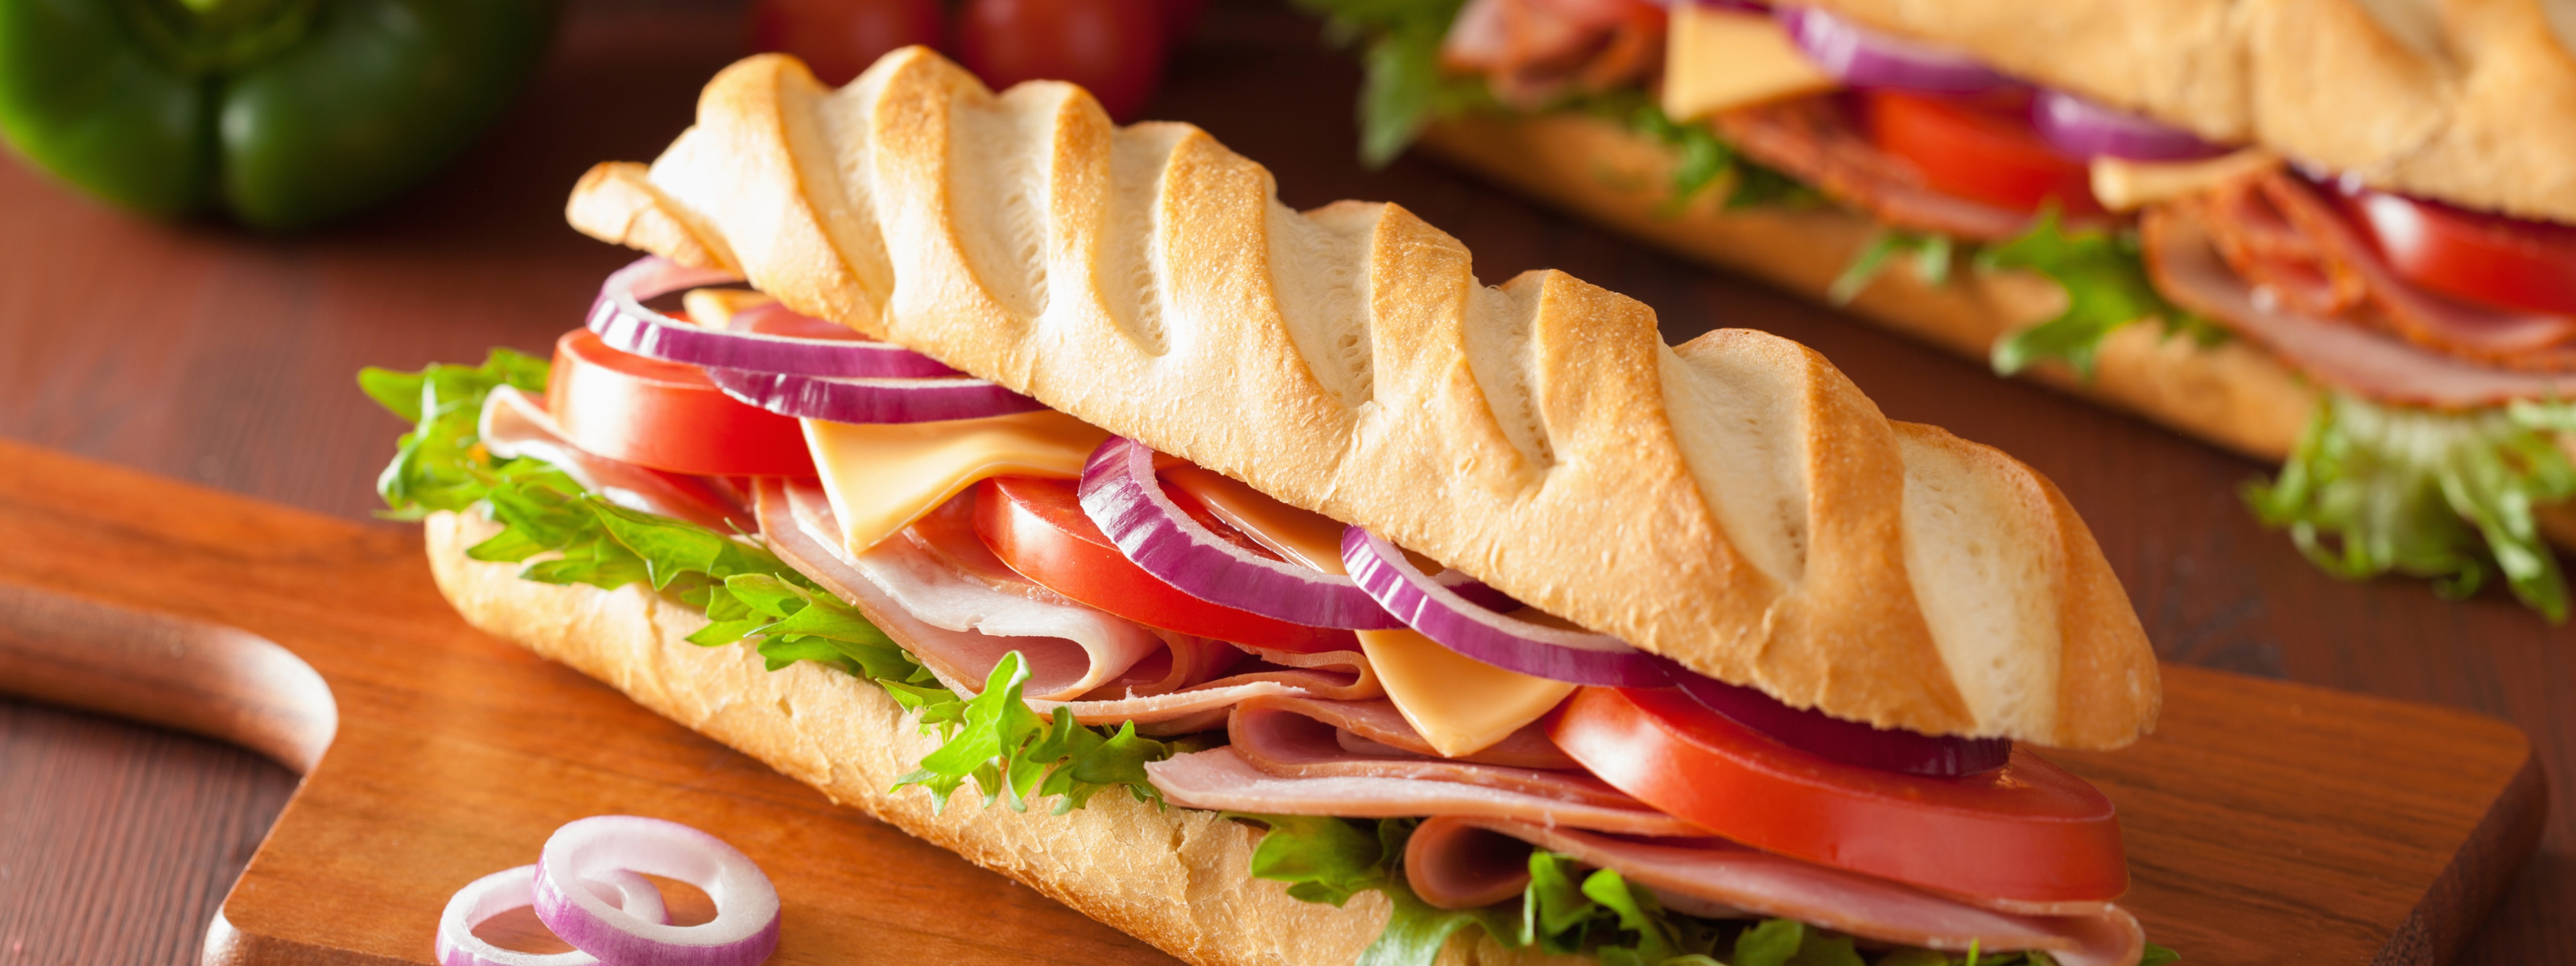 Любимый сэндвич. Бутерброд. Сэндвич с салями. Сэндвич с колбасой. Закрытые бутерброды.